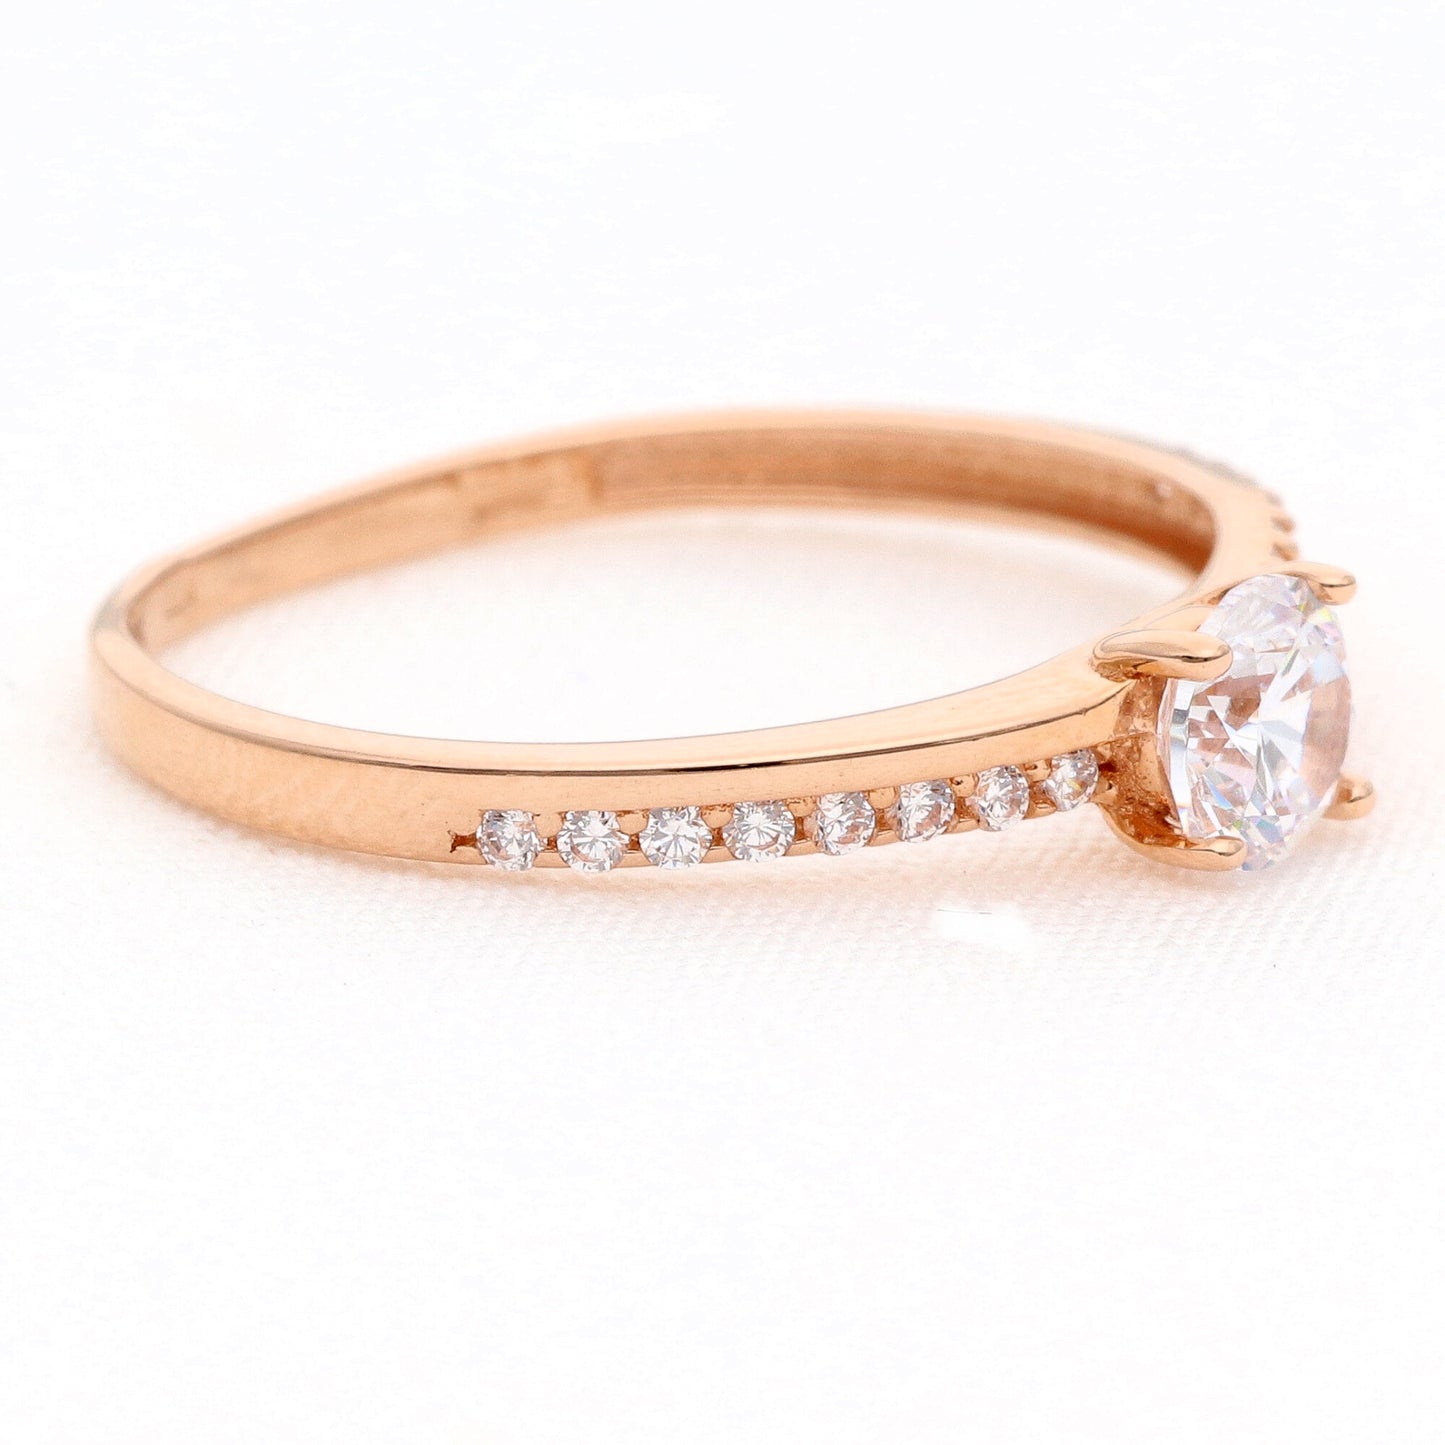 Auksinis žiedas su cirkoniais vestuviniaiziedai.lt